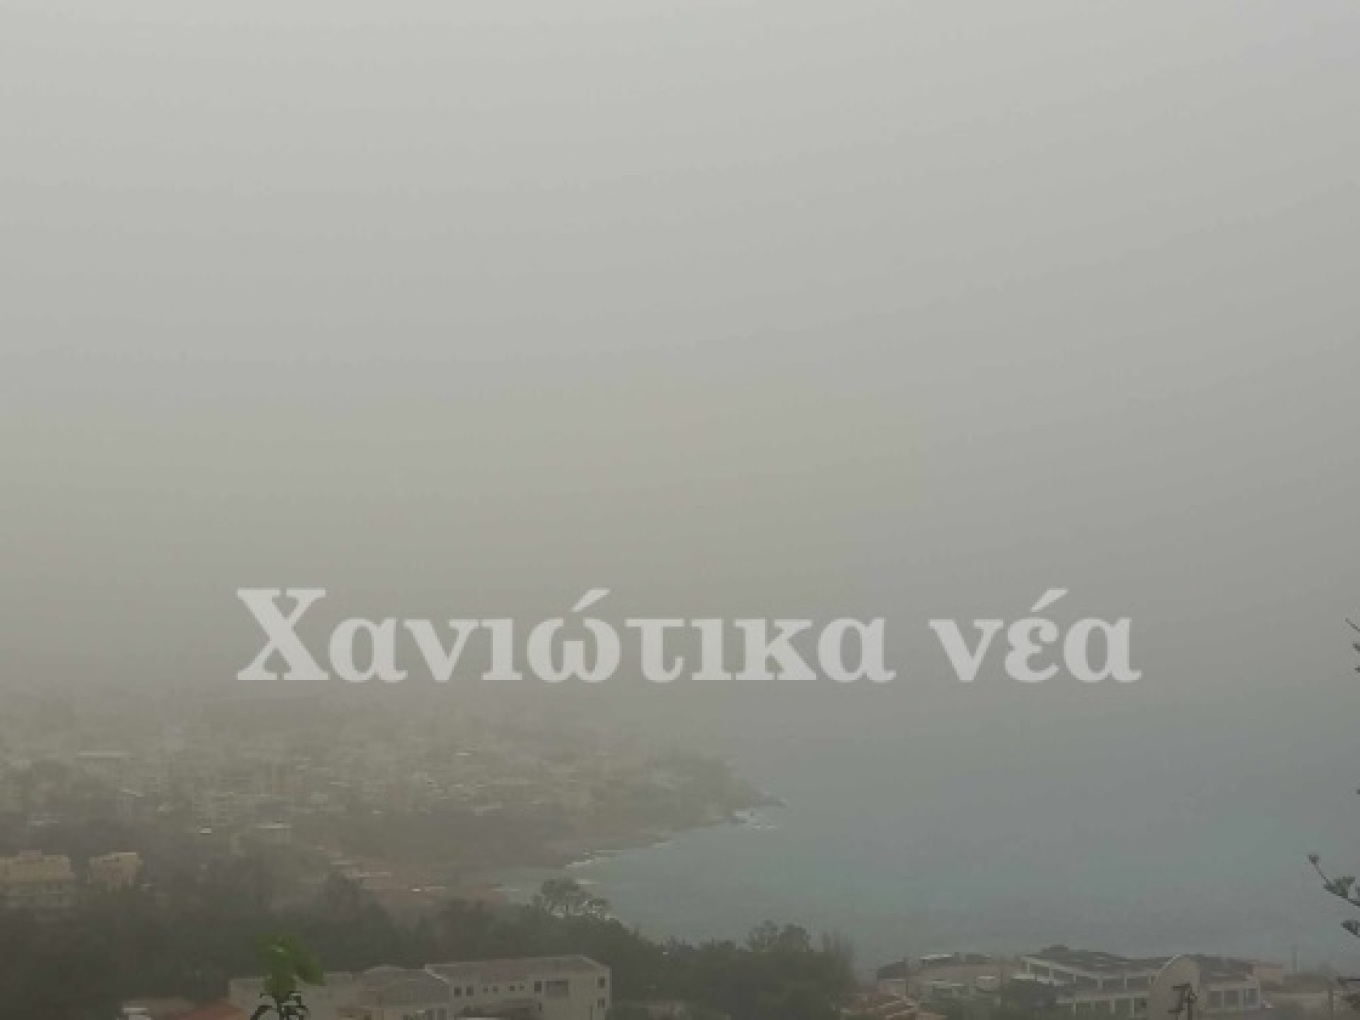 Τοπίο στην ομίχλη και στα Χανιά με την αφρικανική σκόνη να είναι έντονη και την ατμόσφαιρα αποπνικτική. Μάλιστα, σήμερα ο υδράργυρος στην πόλη ξεπέρασε τους 35 βαθμούς Κελσίου.  xania1 xania2 xania3   Συγκεντρώσεις ρεκόρ στην Κρήτη  Η Κρήτη και η Πελοπόννησος πλήττονται ιδιαίτερα από το κύμα μεταφοράς σκόνης από τη Σαχάρα, ενώ υψηλές είναι οι συγκεντρώσεις και στην Αττική, όπως είπε στο protothema.gr ο διευθυντής Ερευνών του Αστεροσκοπείου της Αθήνας, Κώστας Λαγουβάρδος. Είναι χαρακτηριστικό για την κατάστα